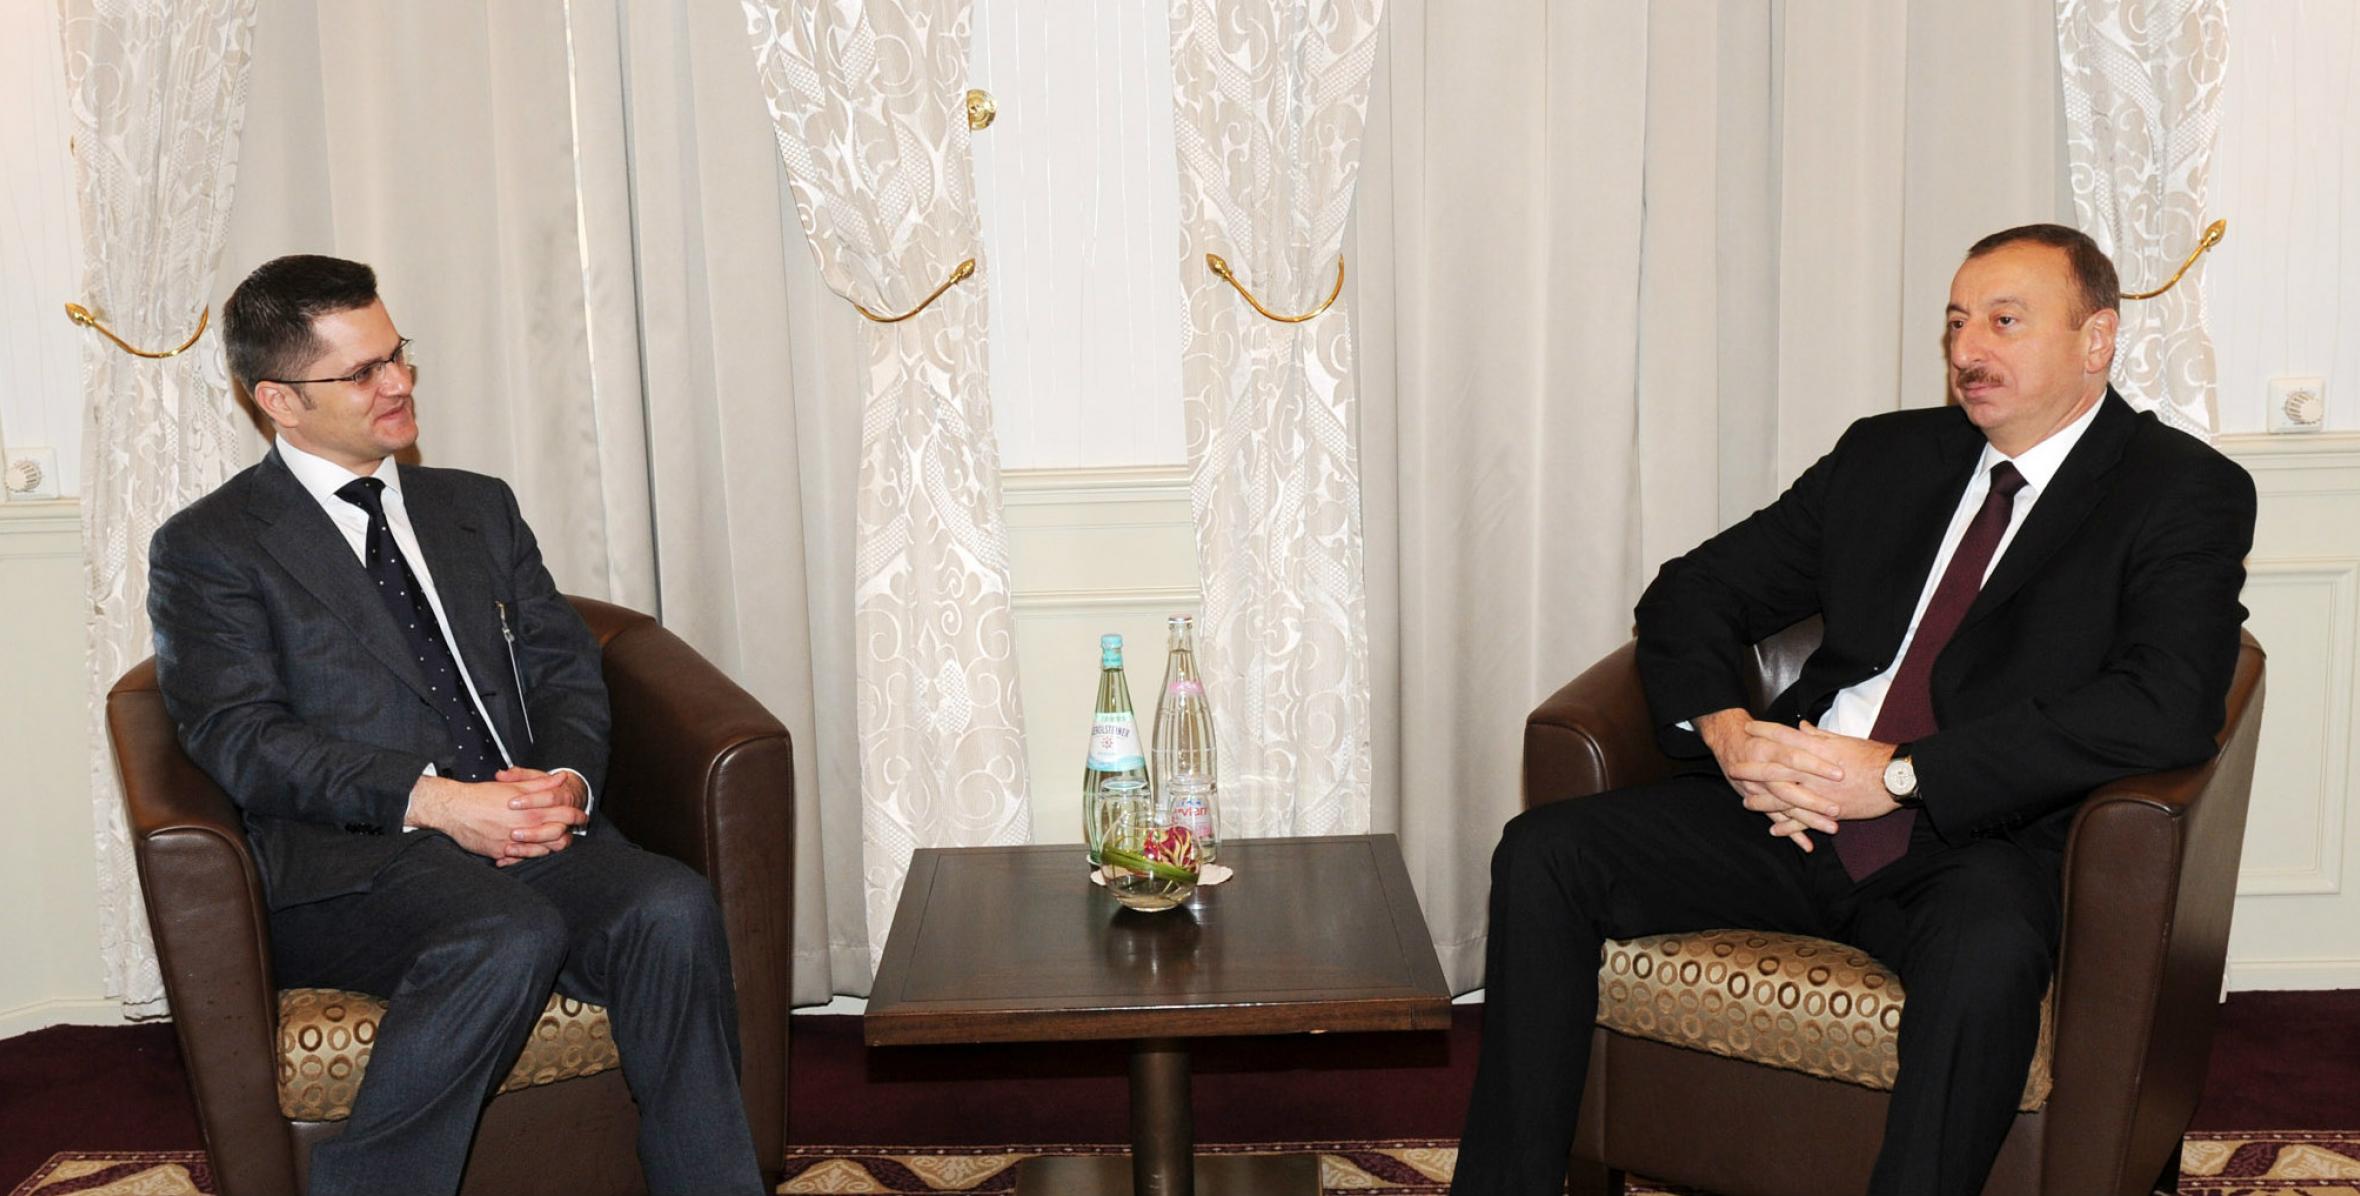 İlham Əliyev Serbiyanın xarici işlər naziri Vuk Yeremiç ilə görüşmüşdür